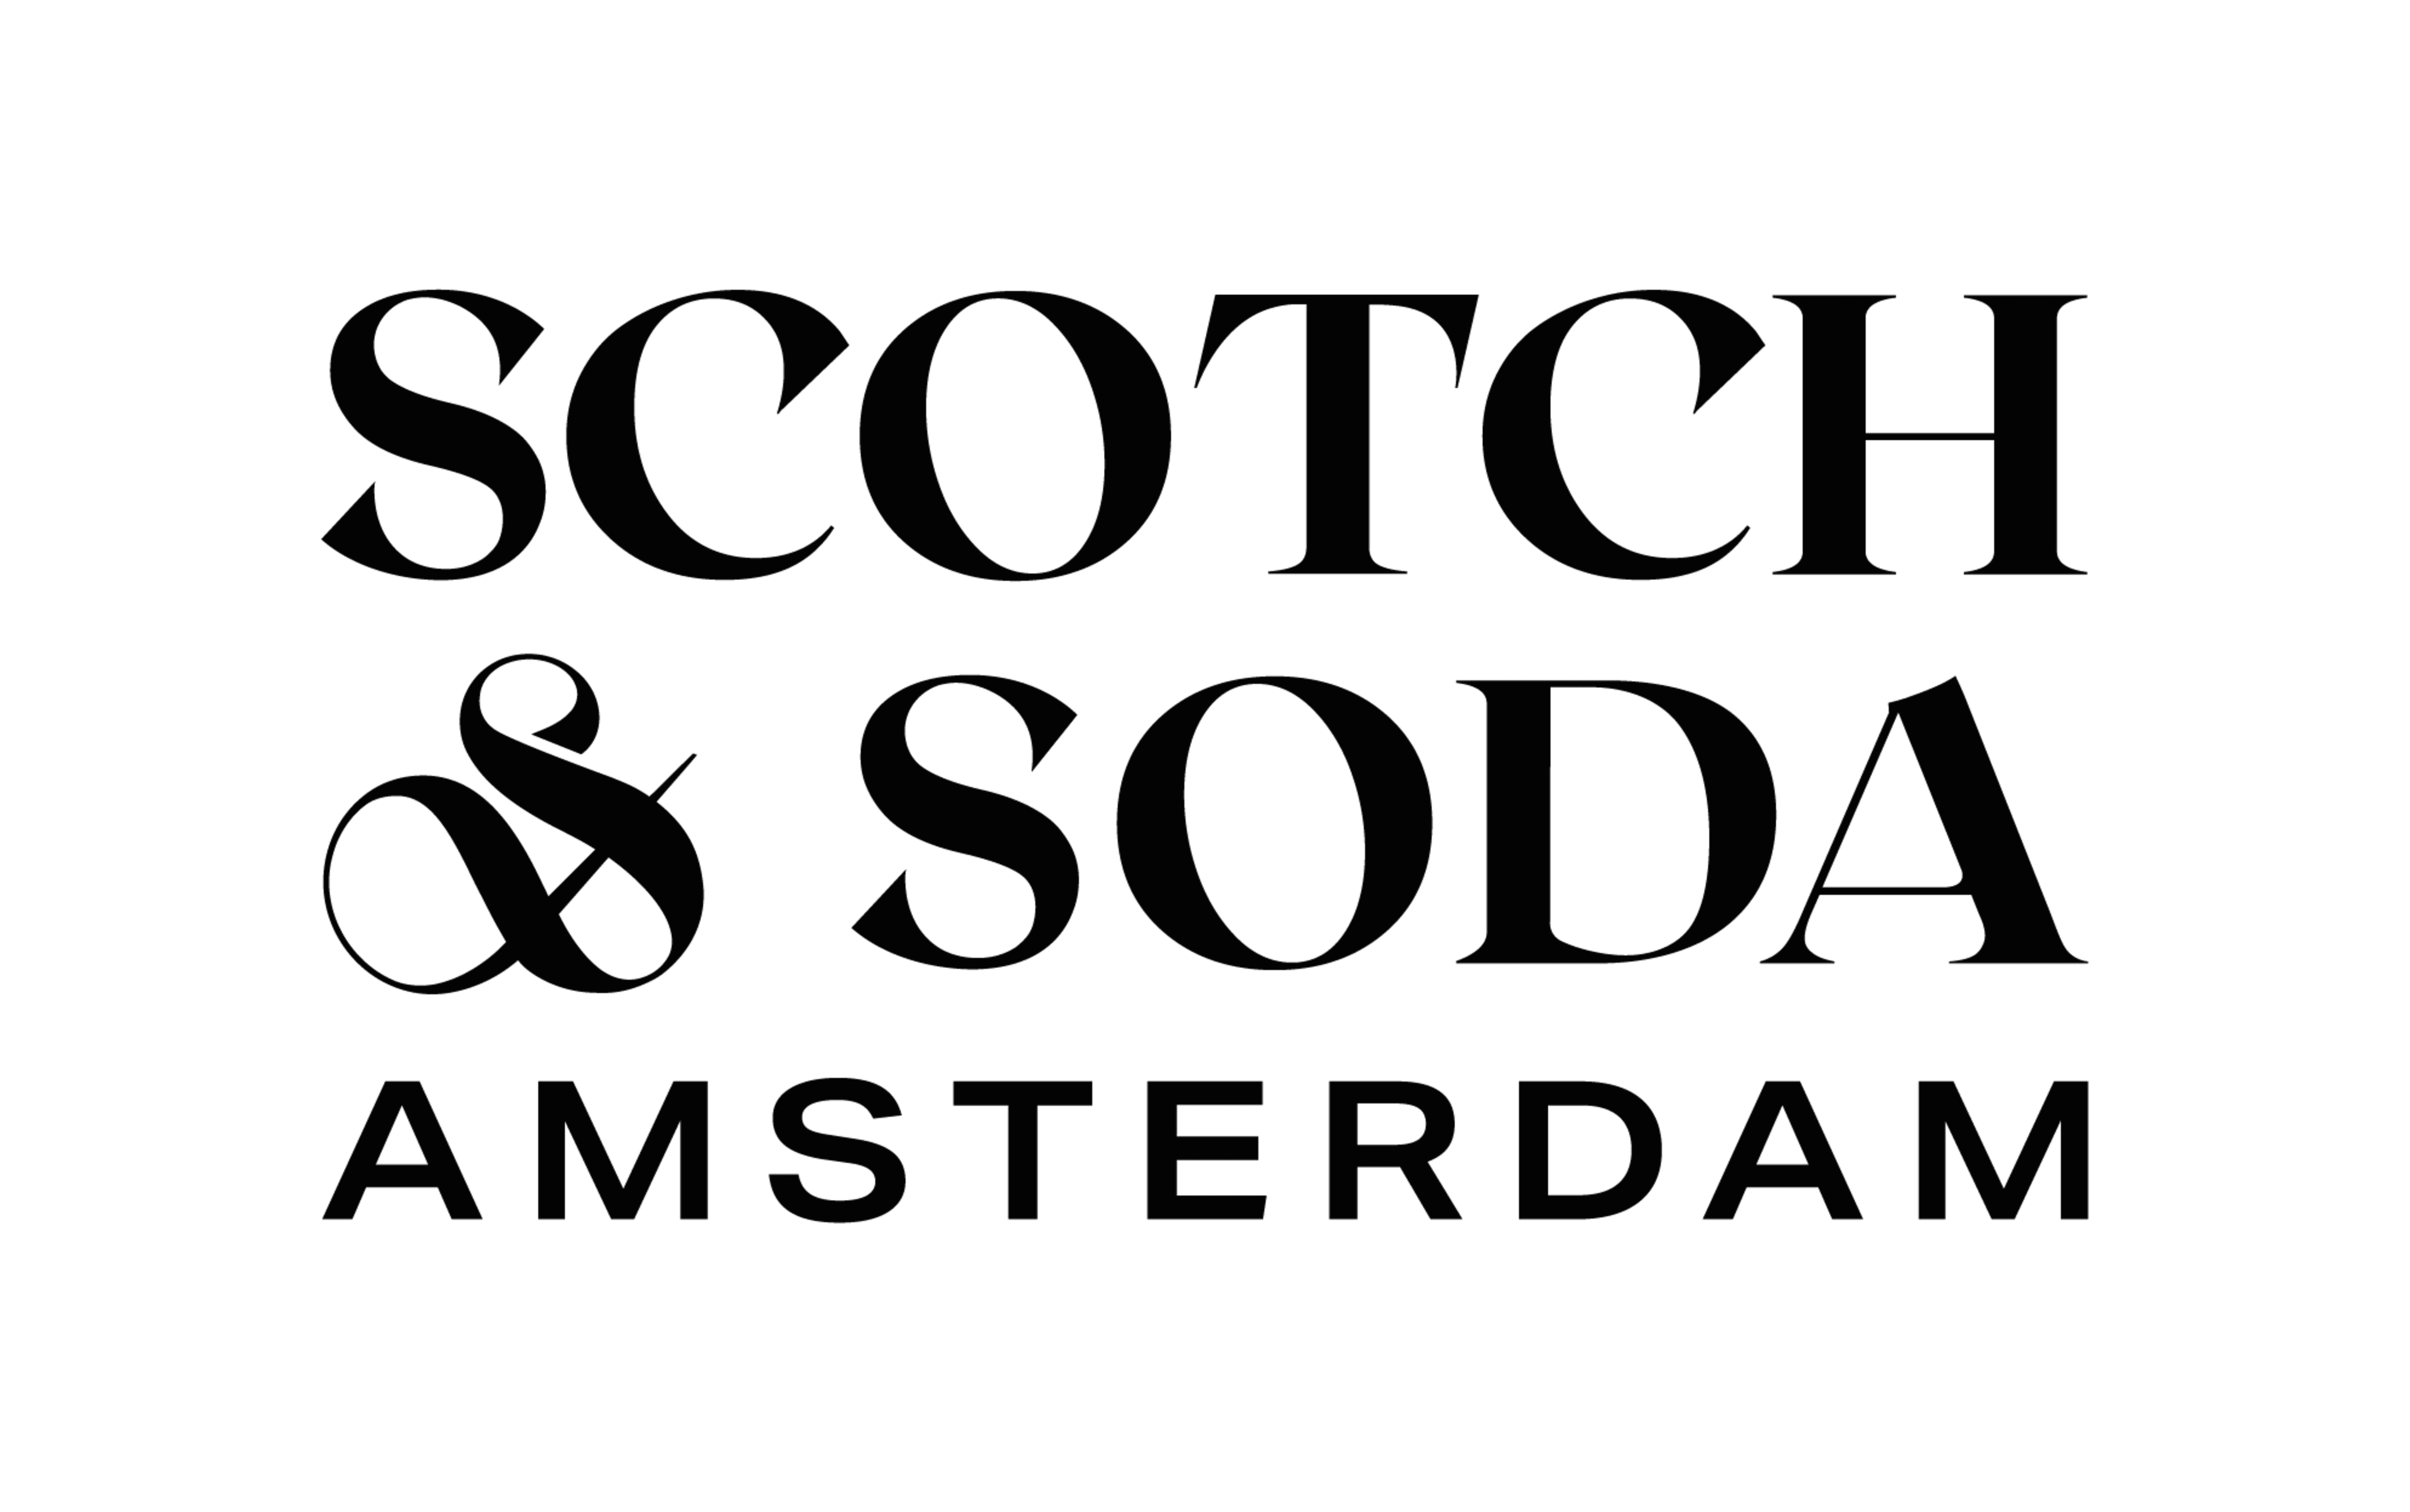 Scotch & Soda Code